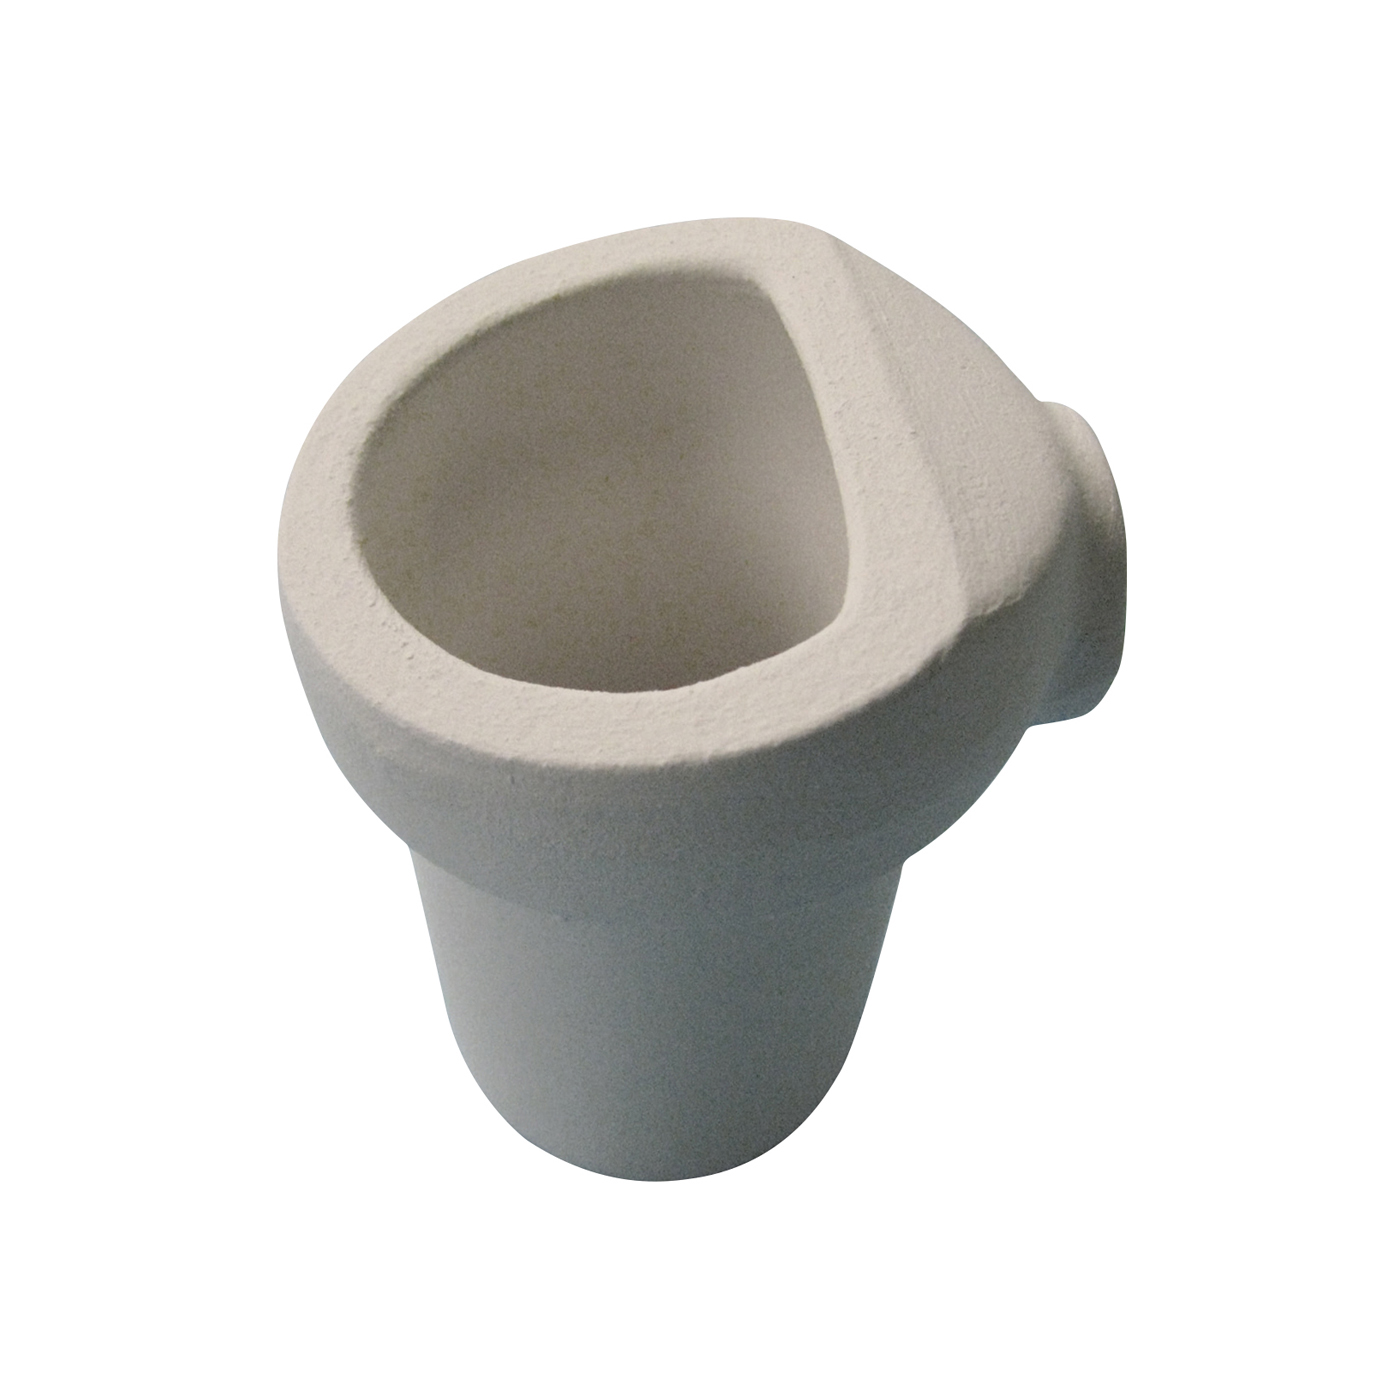 Ceramic Crucible, for Platinum Alloys - 1 piece